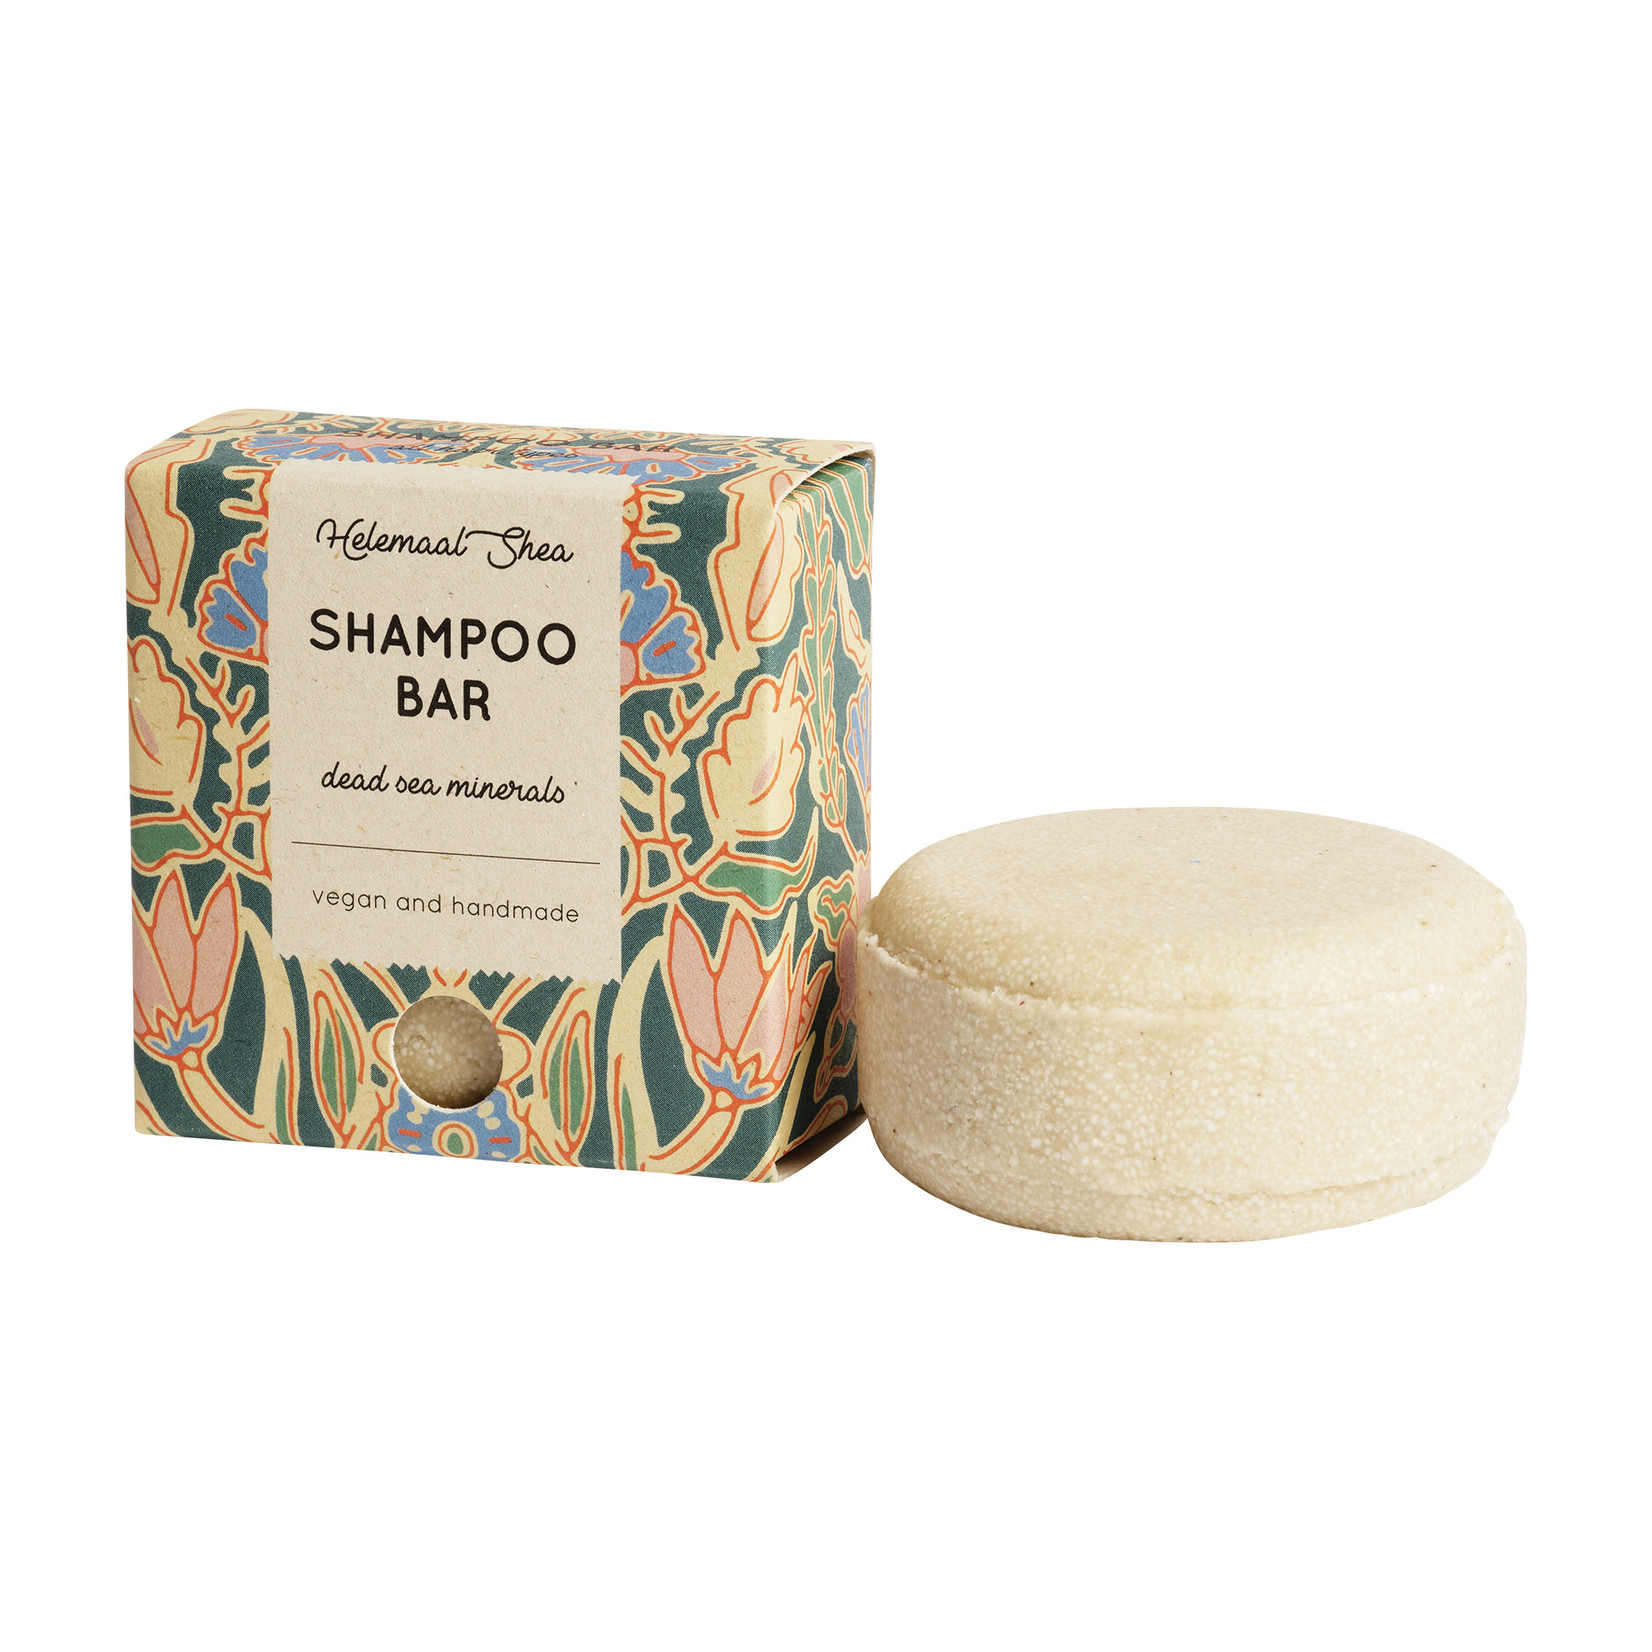 festes Shampoo - Mineralien aus dem Toten Meer